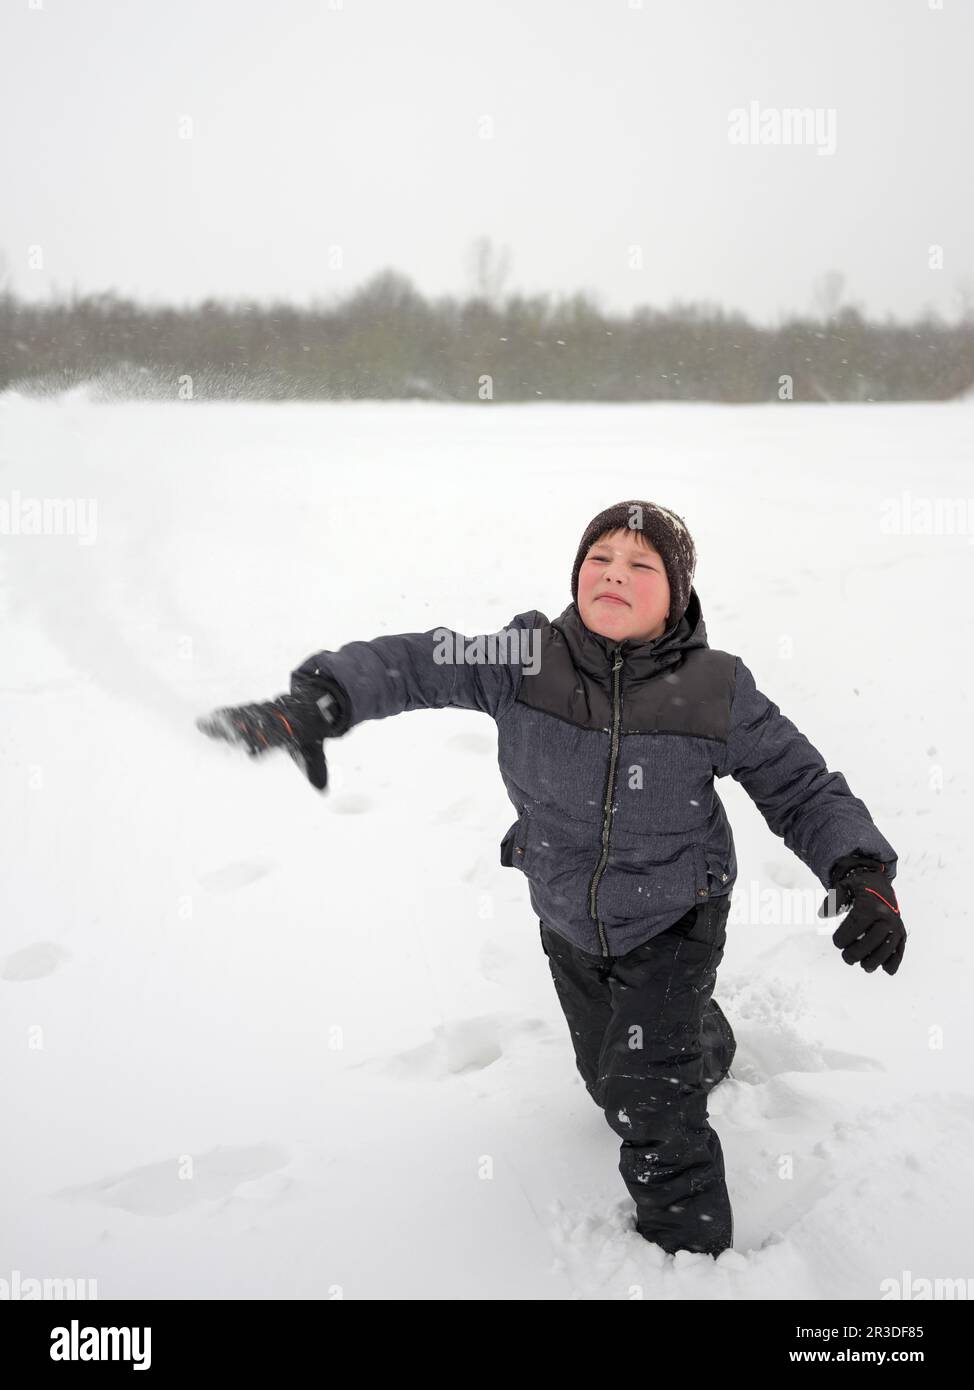 Hombre Joven En Bola De Nieve Que Lanza De La Ropa De Deportes Del Invierno  Foto de archivo - Imagen de alegre, riéndose: 109826600